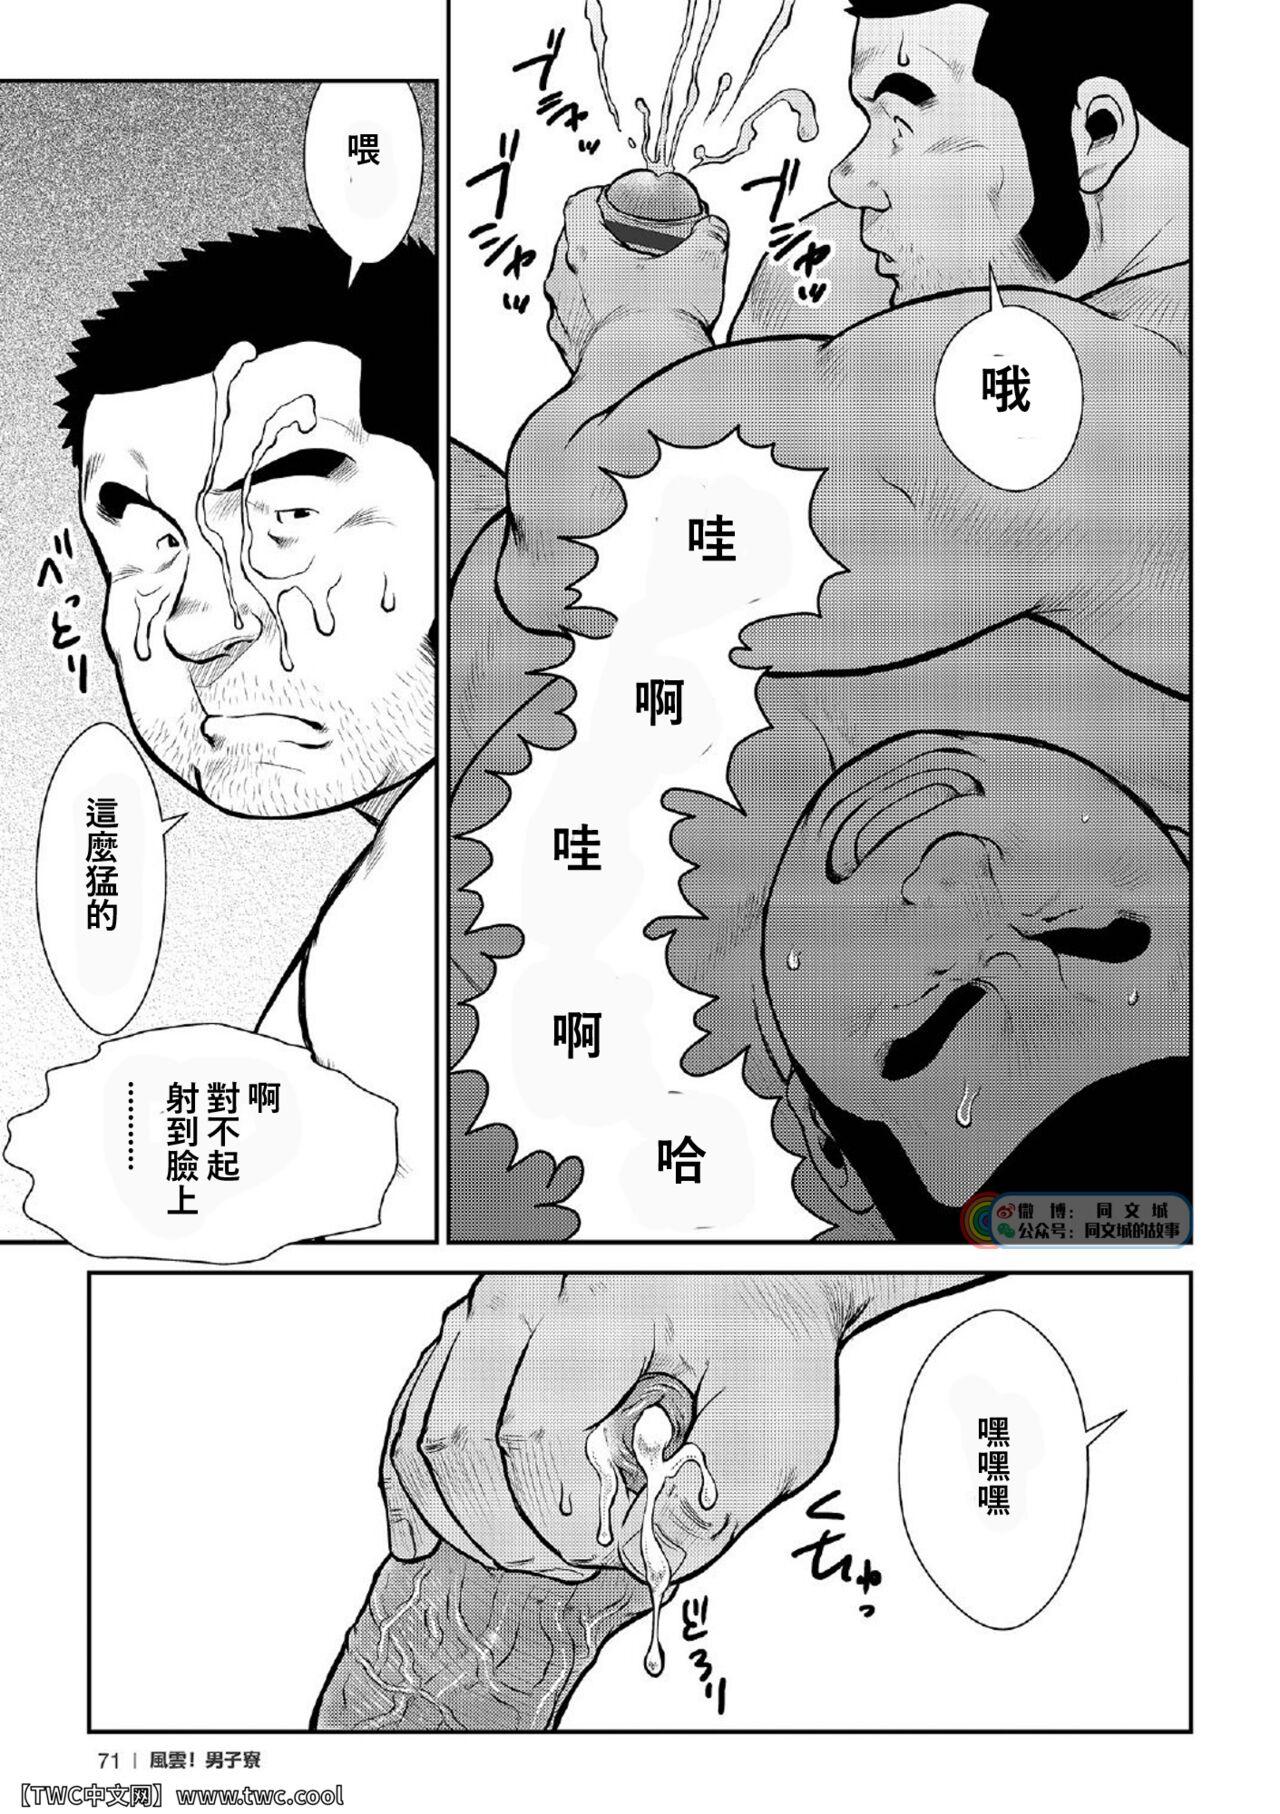 [Ebisubashi Seizou] Ebisubashi Seizou Tanpen Manga Shuu 2 Fuuun! Danshi Ryou [Bunsatsuban] PART 2 Bousou Hantou Taifuu Zensen Ch. 1 + Ch. 2 [Chinese] [中国翻訳] [同文城][Digital] 48